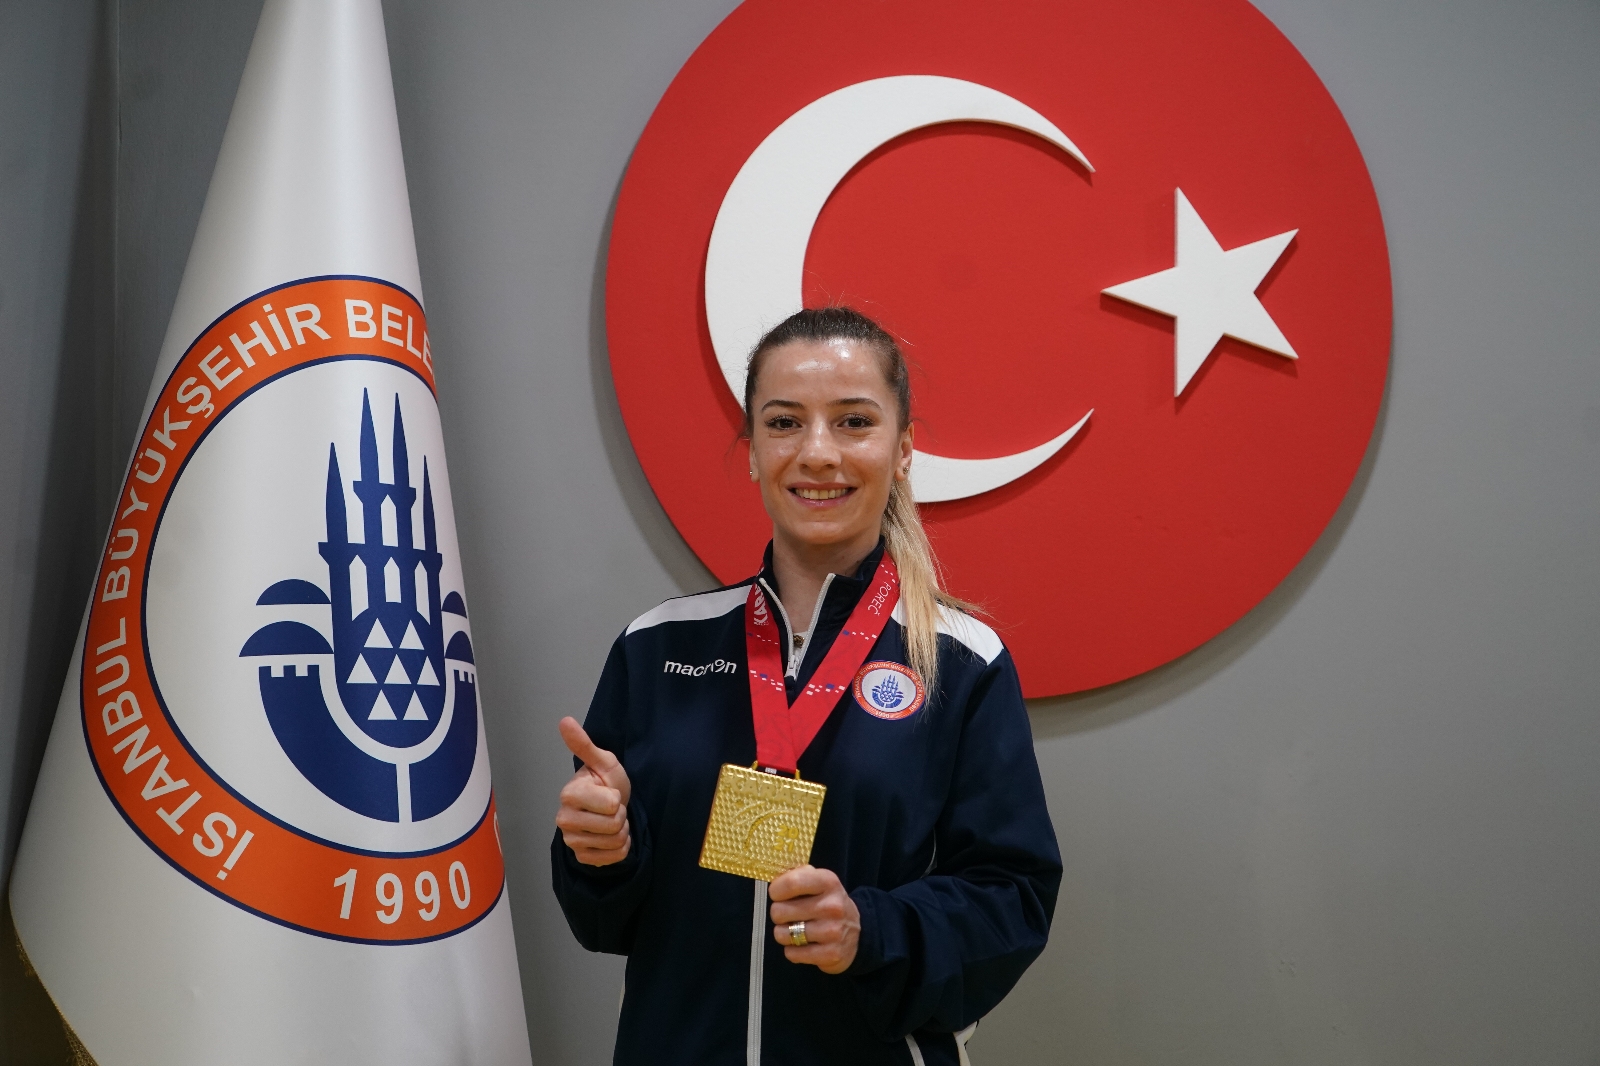 Serap Özçelik Arapoğlu: “Umarım olimpiyatlarda ülkemi en iyi şekilde temsil ederim”